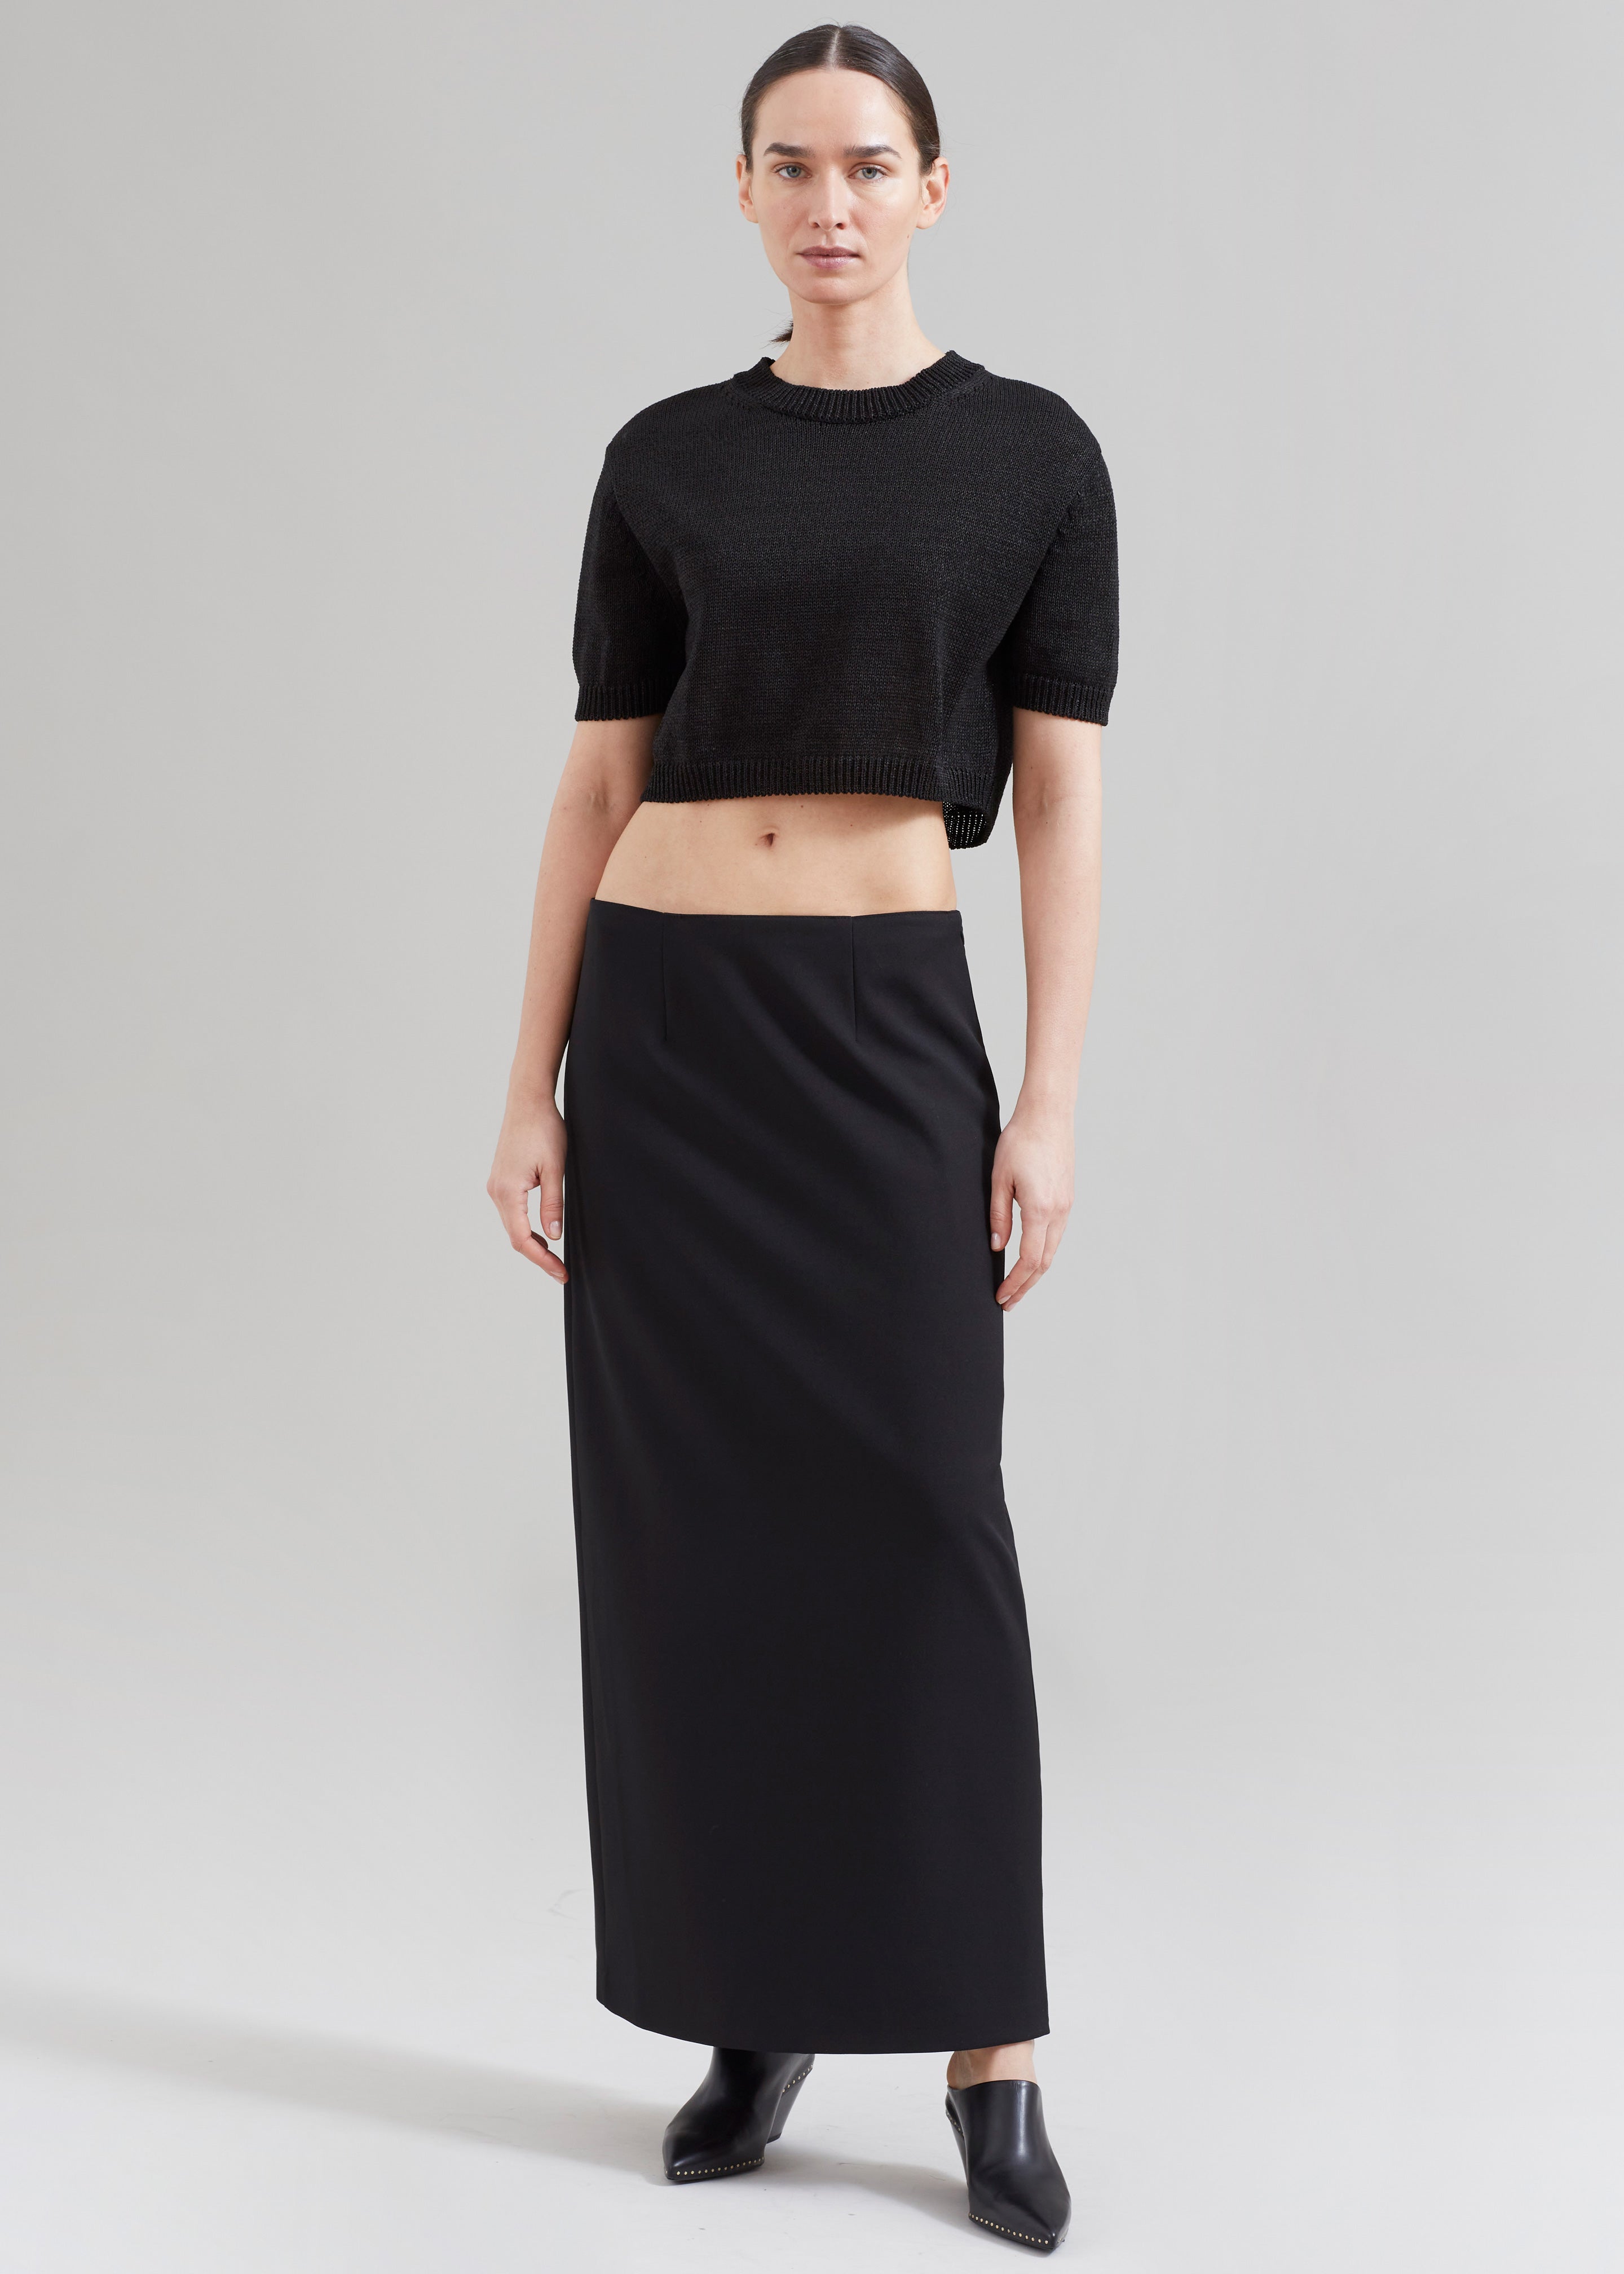 Midi Skirt | Women's Midi Skirts | Satin & Floral | Ally Fashion